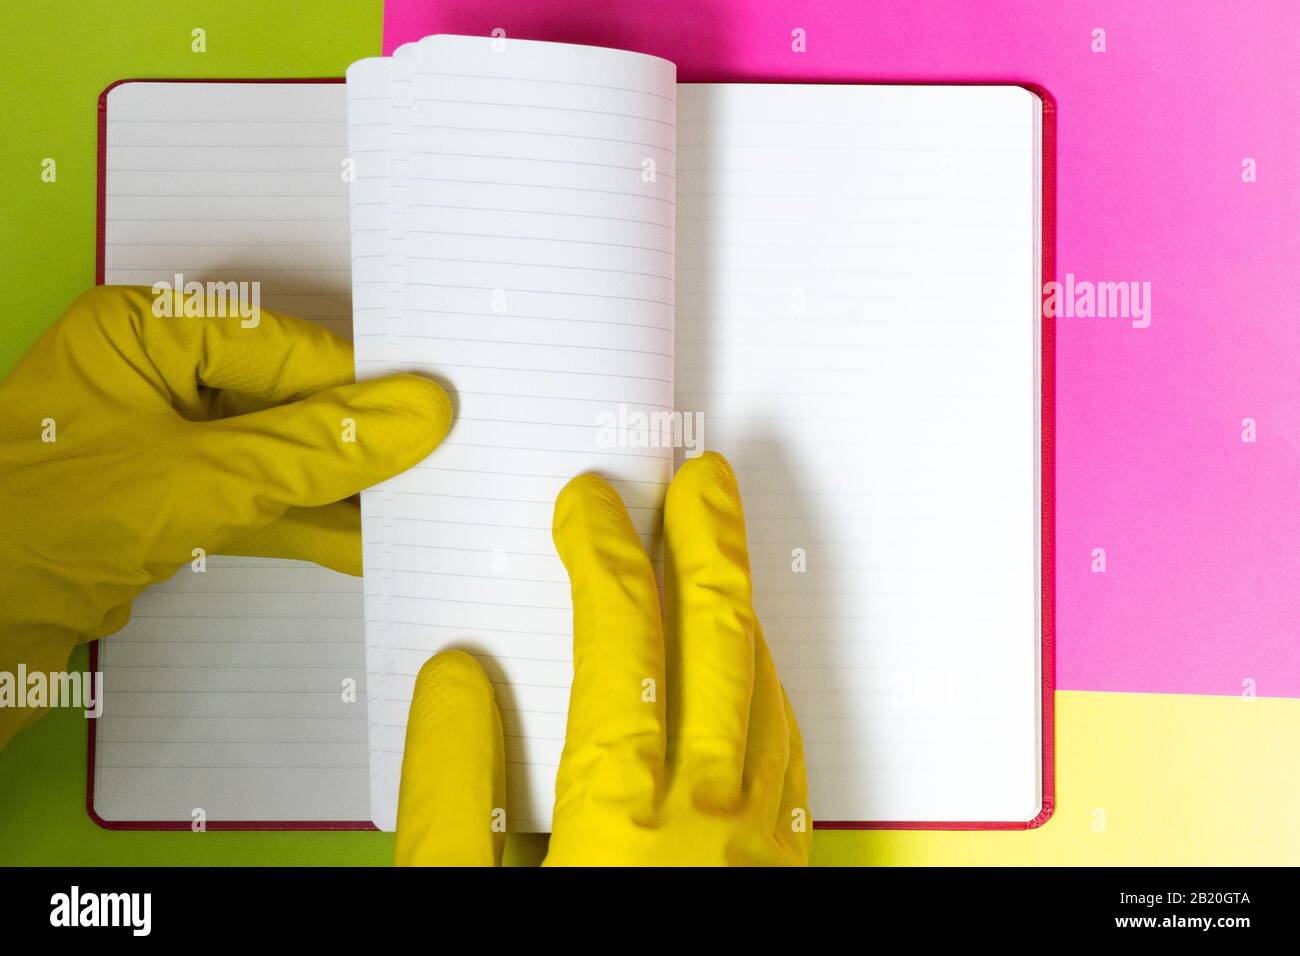 Puntare il dito con i guanti verso una pagina vuota del caricatore. Sfondo rosa e giallo brillante. Pericolo Foto Stock